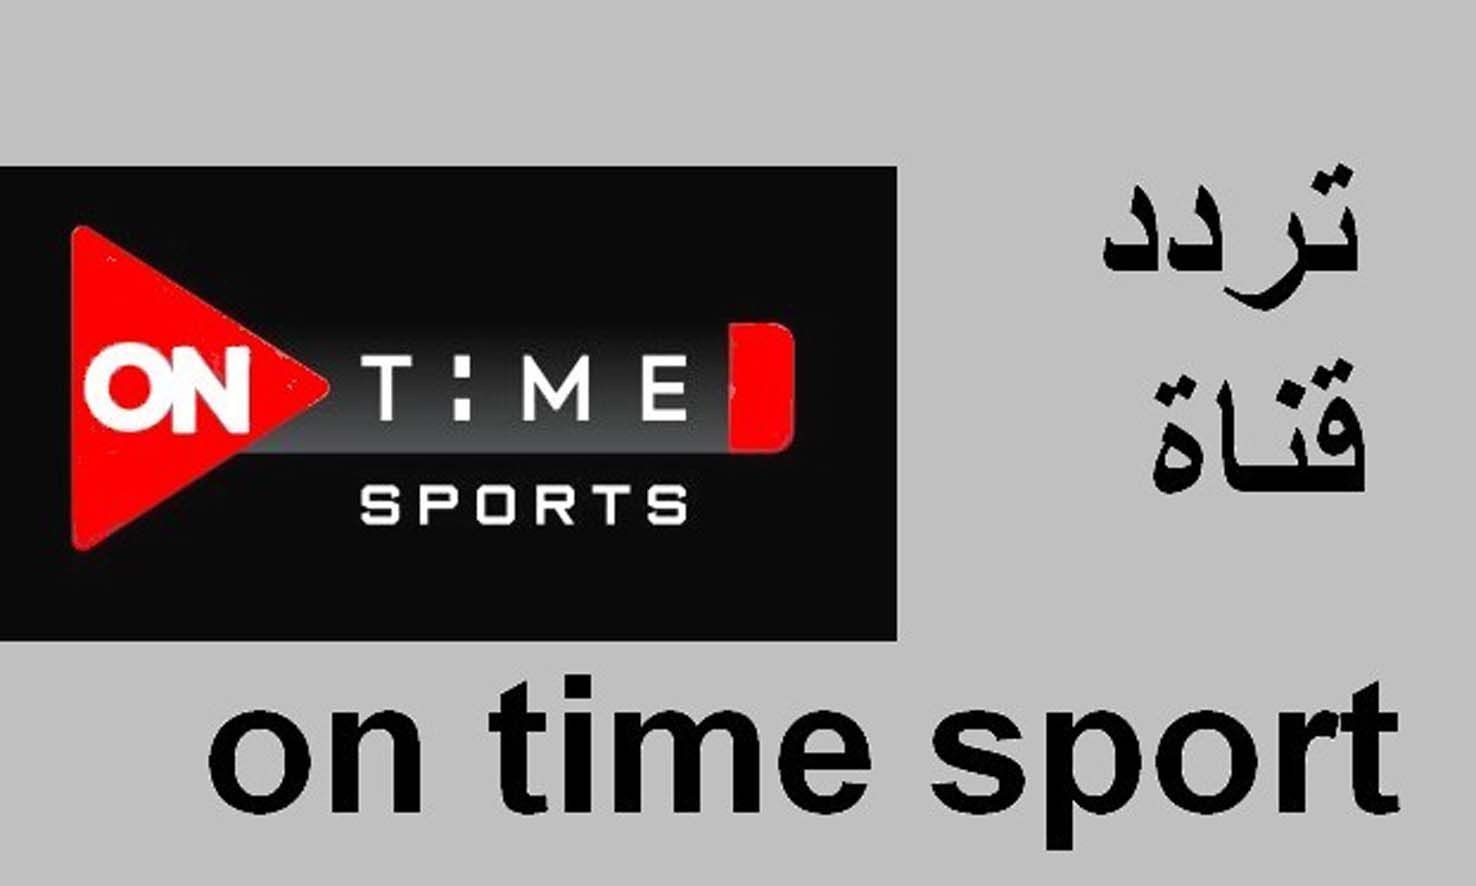 تردد أون تايم سبورت مجموعة قنوات “On Time sport” تردد القنوات الرياضية الجديدة 2022 علي النايل سات